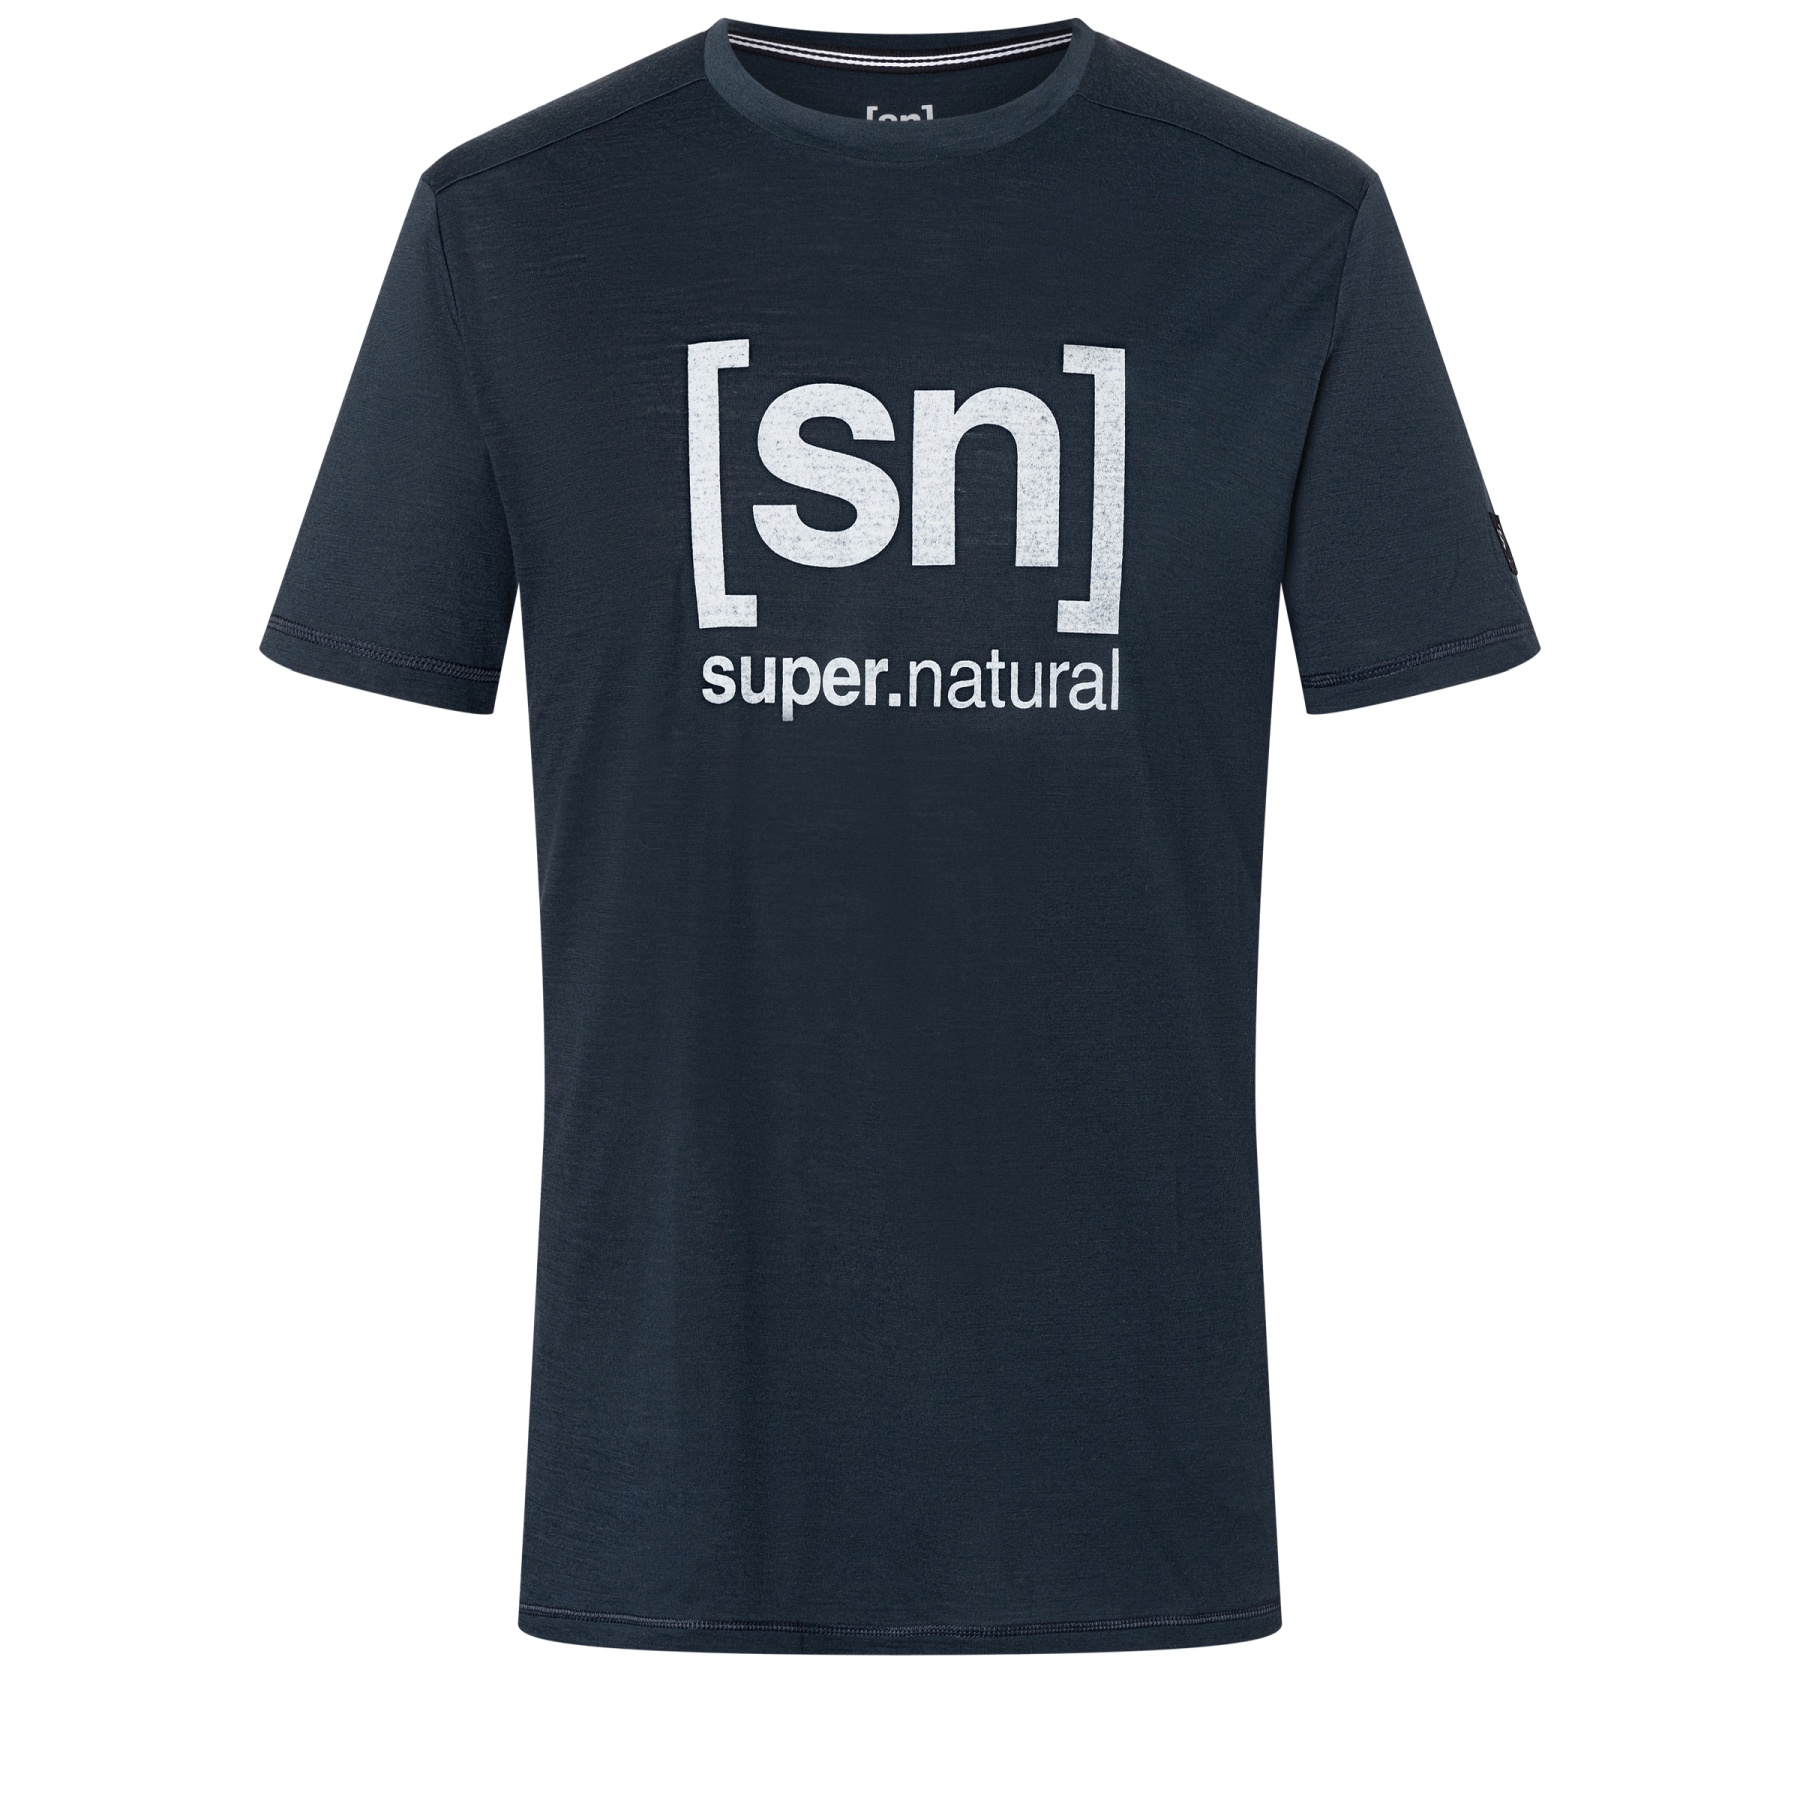 Produktbild von SUPER.NATURAL Logo T-Shirt - Blueberry/Vapor Grey